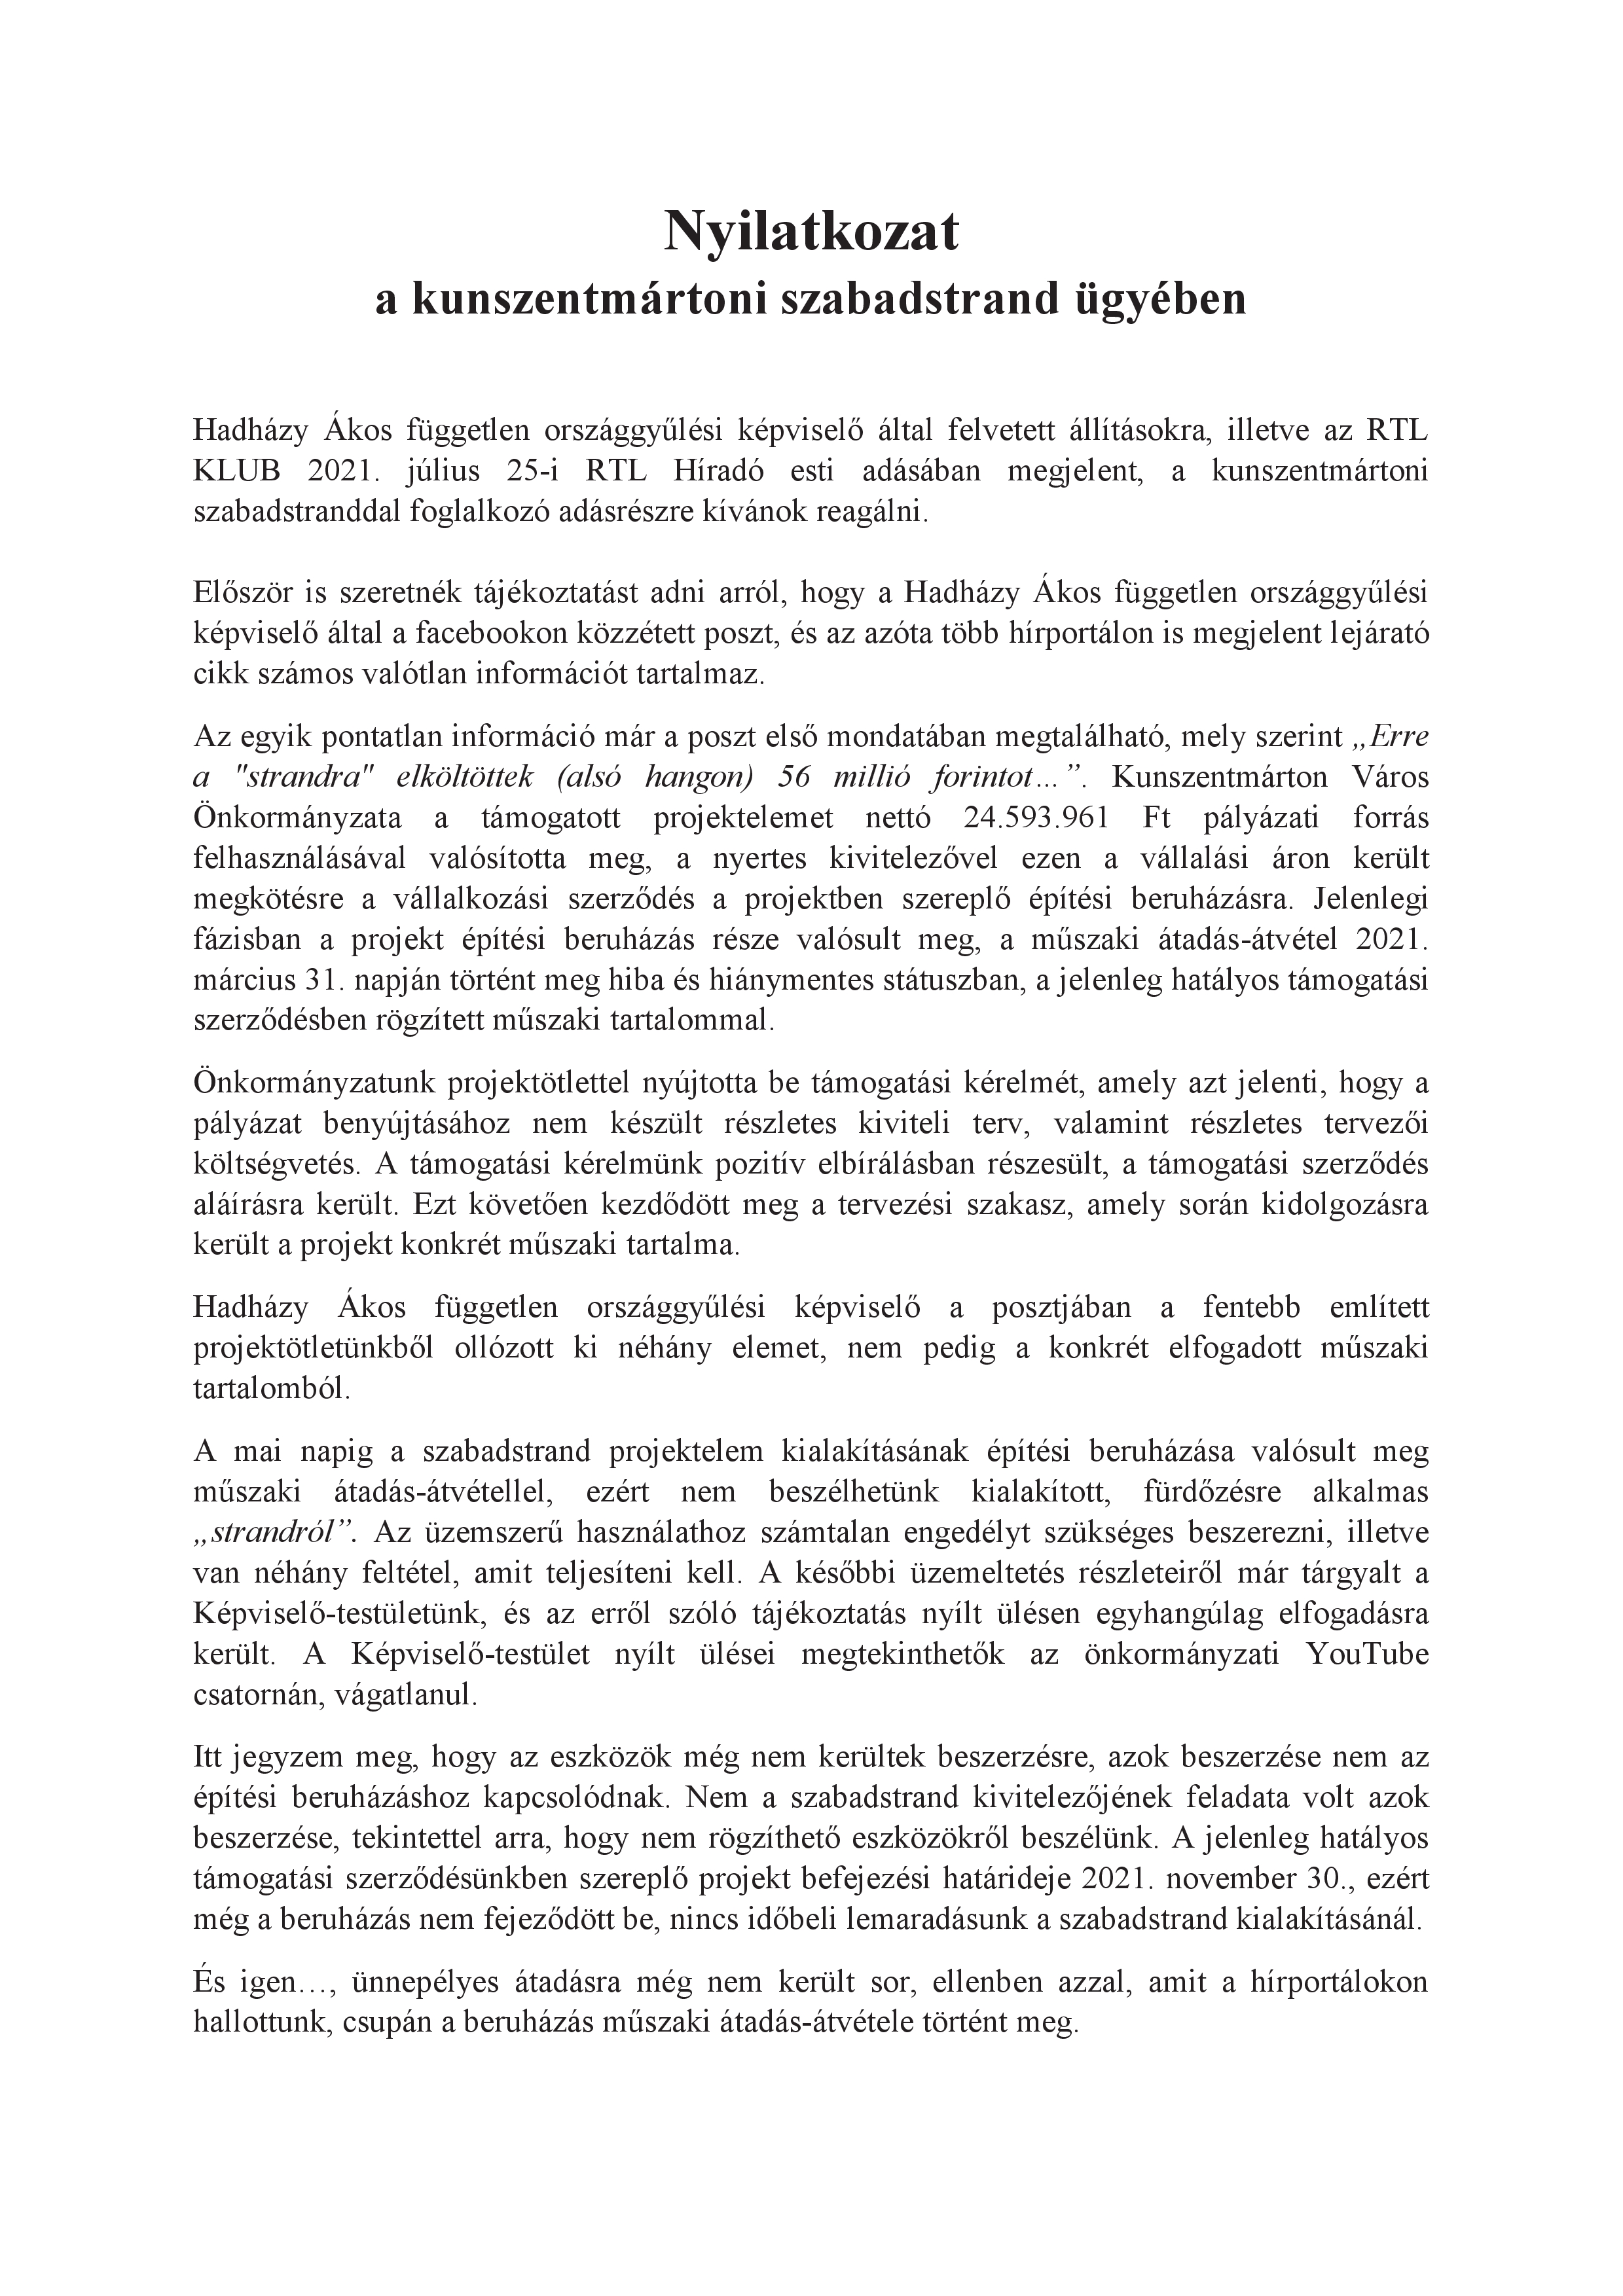 Nyilatkozat a kunszentmártoni szabadstrand ügyében